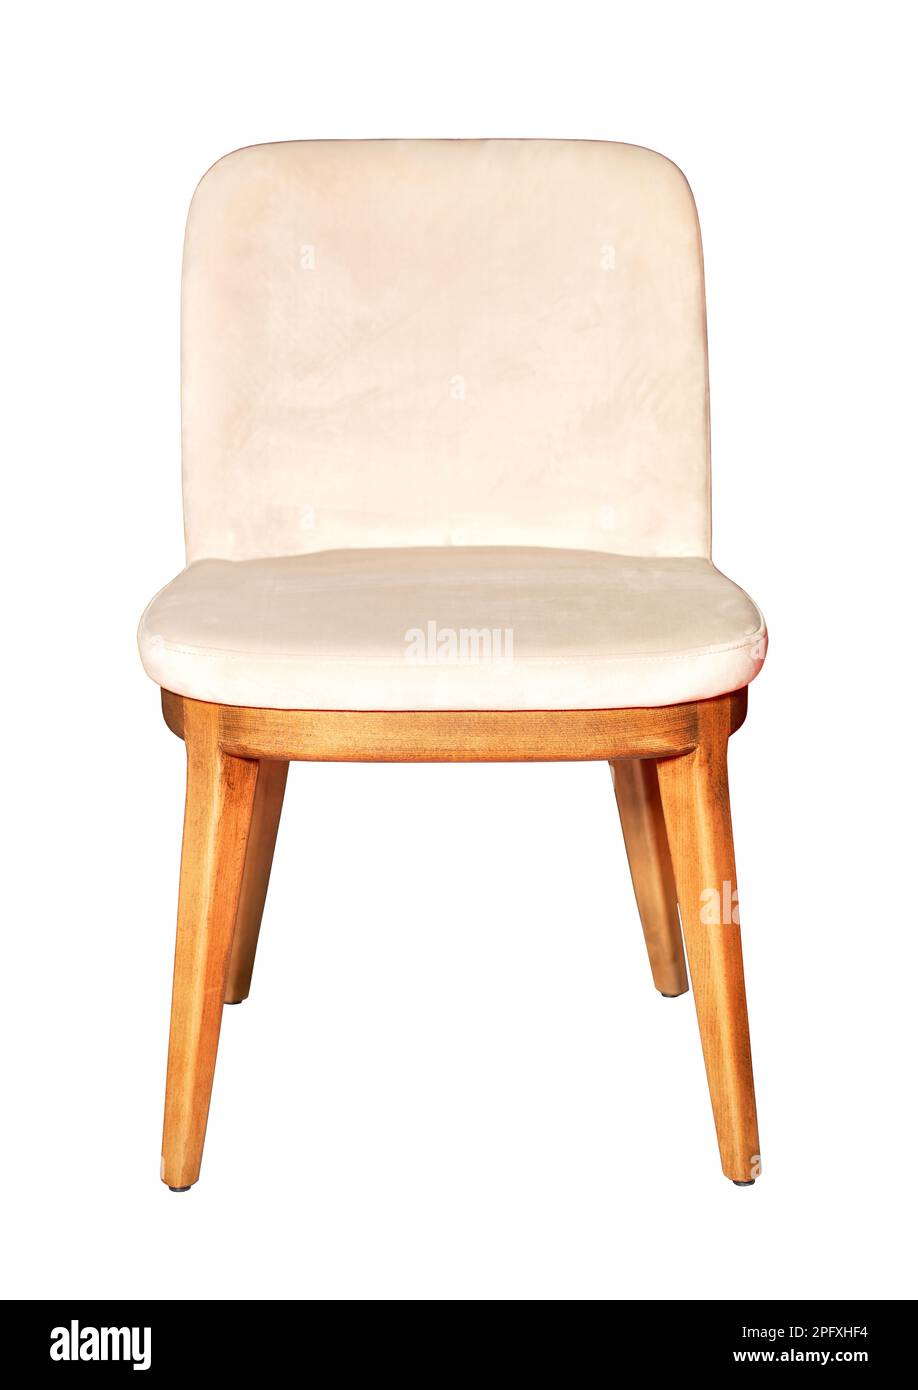 Confortable chaise à manger avec cadre en bois et tissus en velours crème. L'image est isolée sur un fond blanc. Banque D'Images